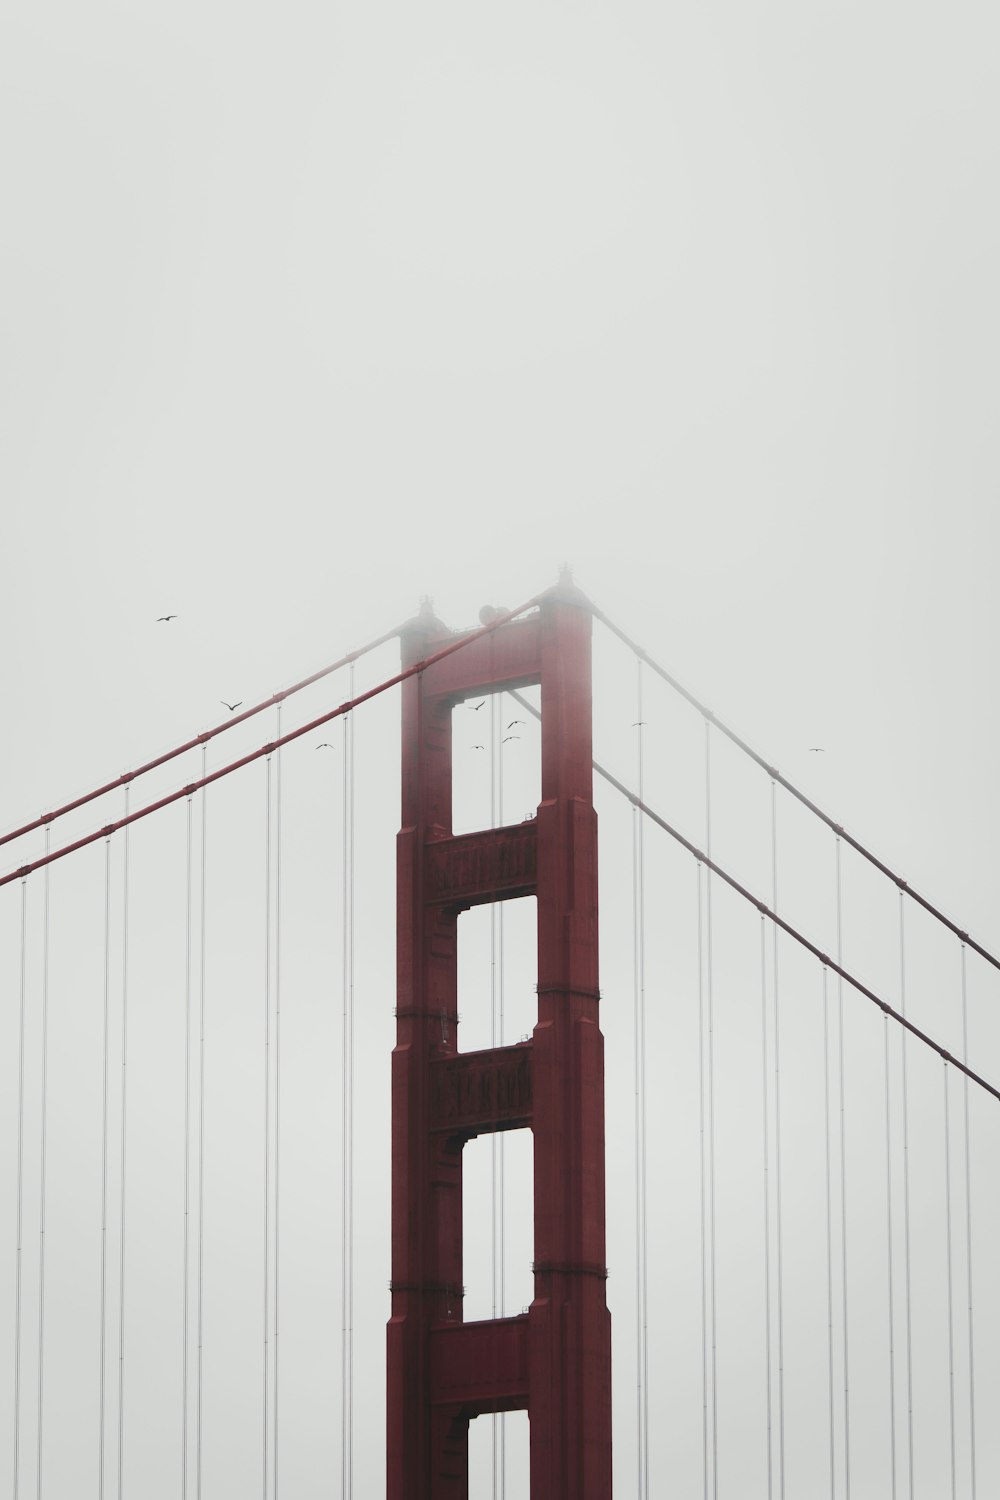 ponte dourada do portão na fotografia em tons de cinza